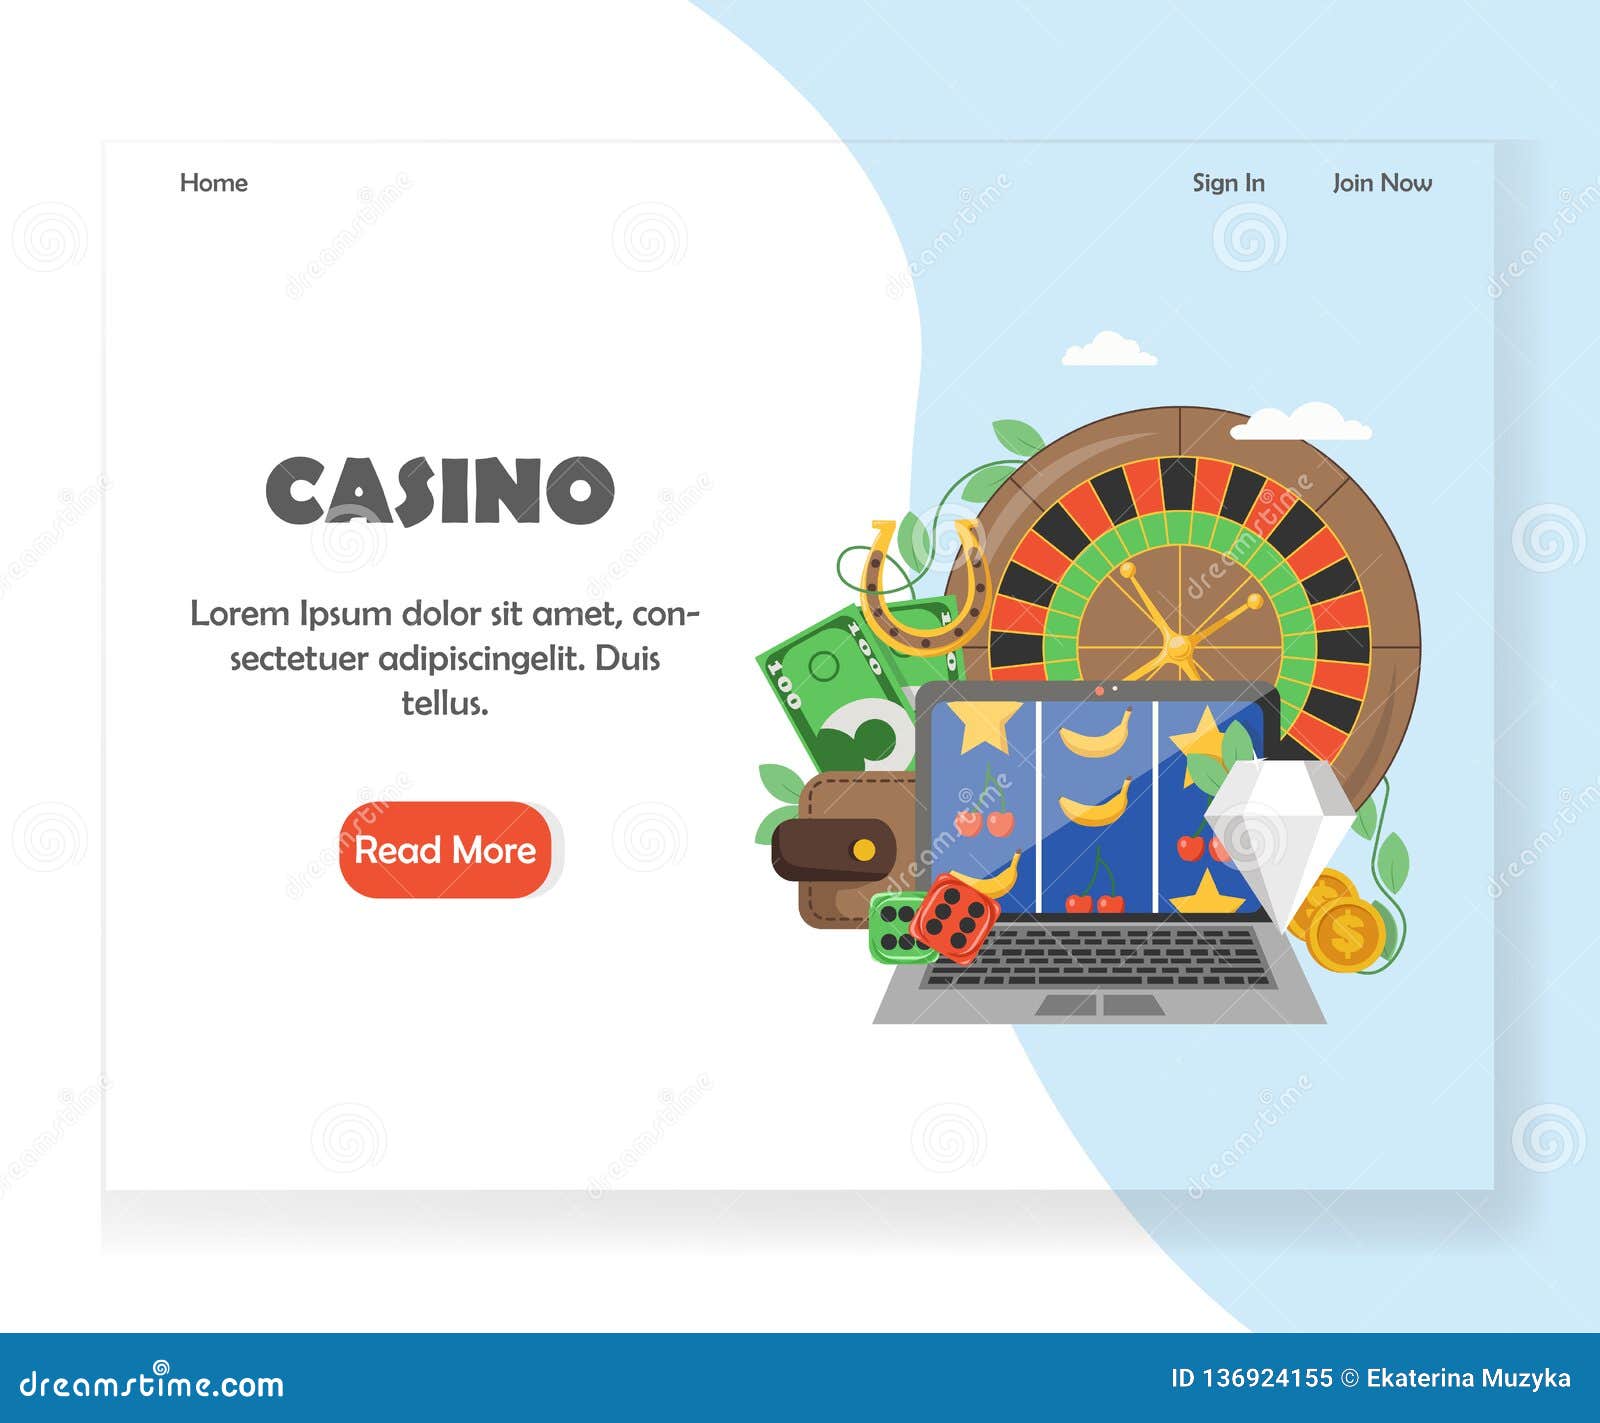 Wer möchte noch Spaß an seriöse online casinos österreich haben?